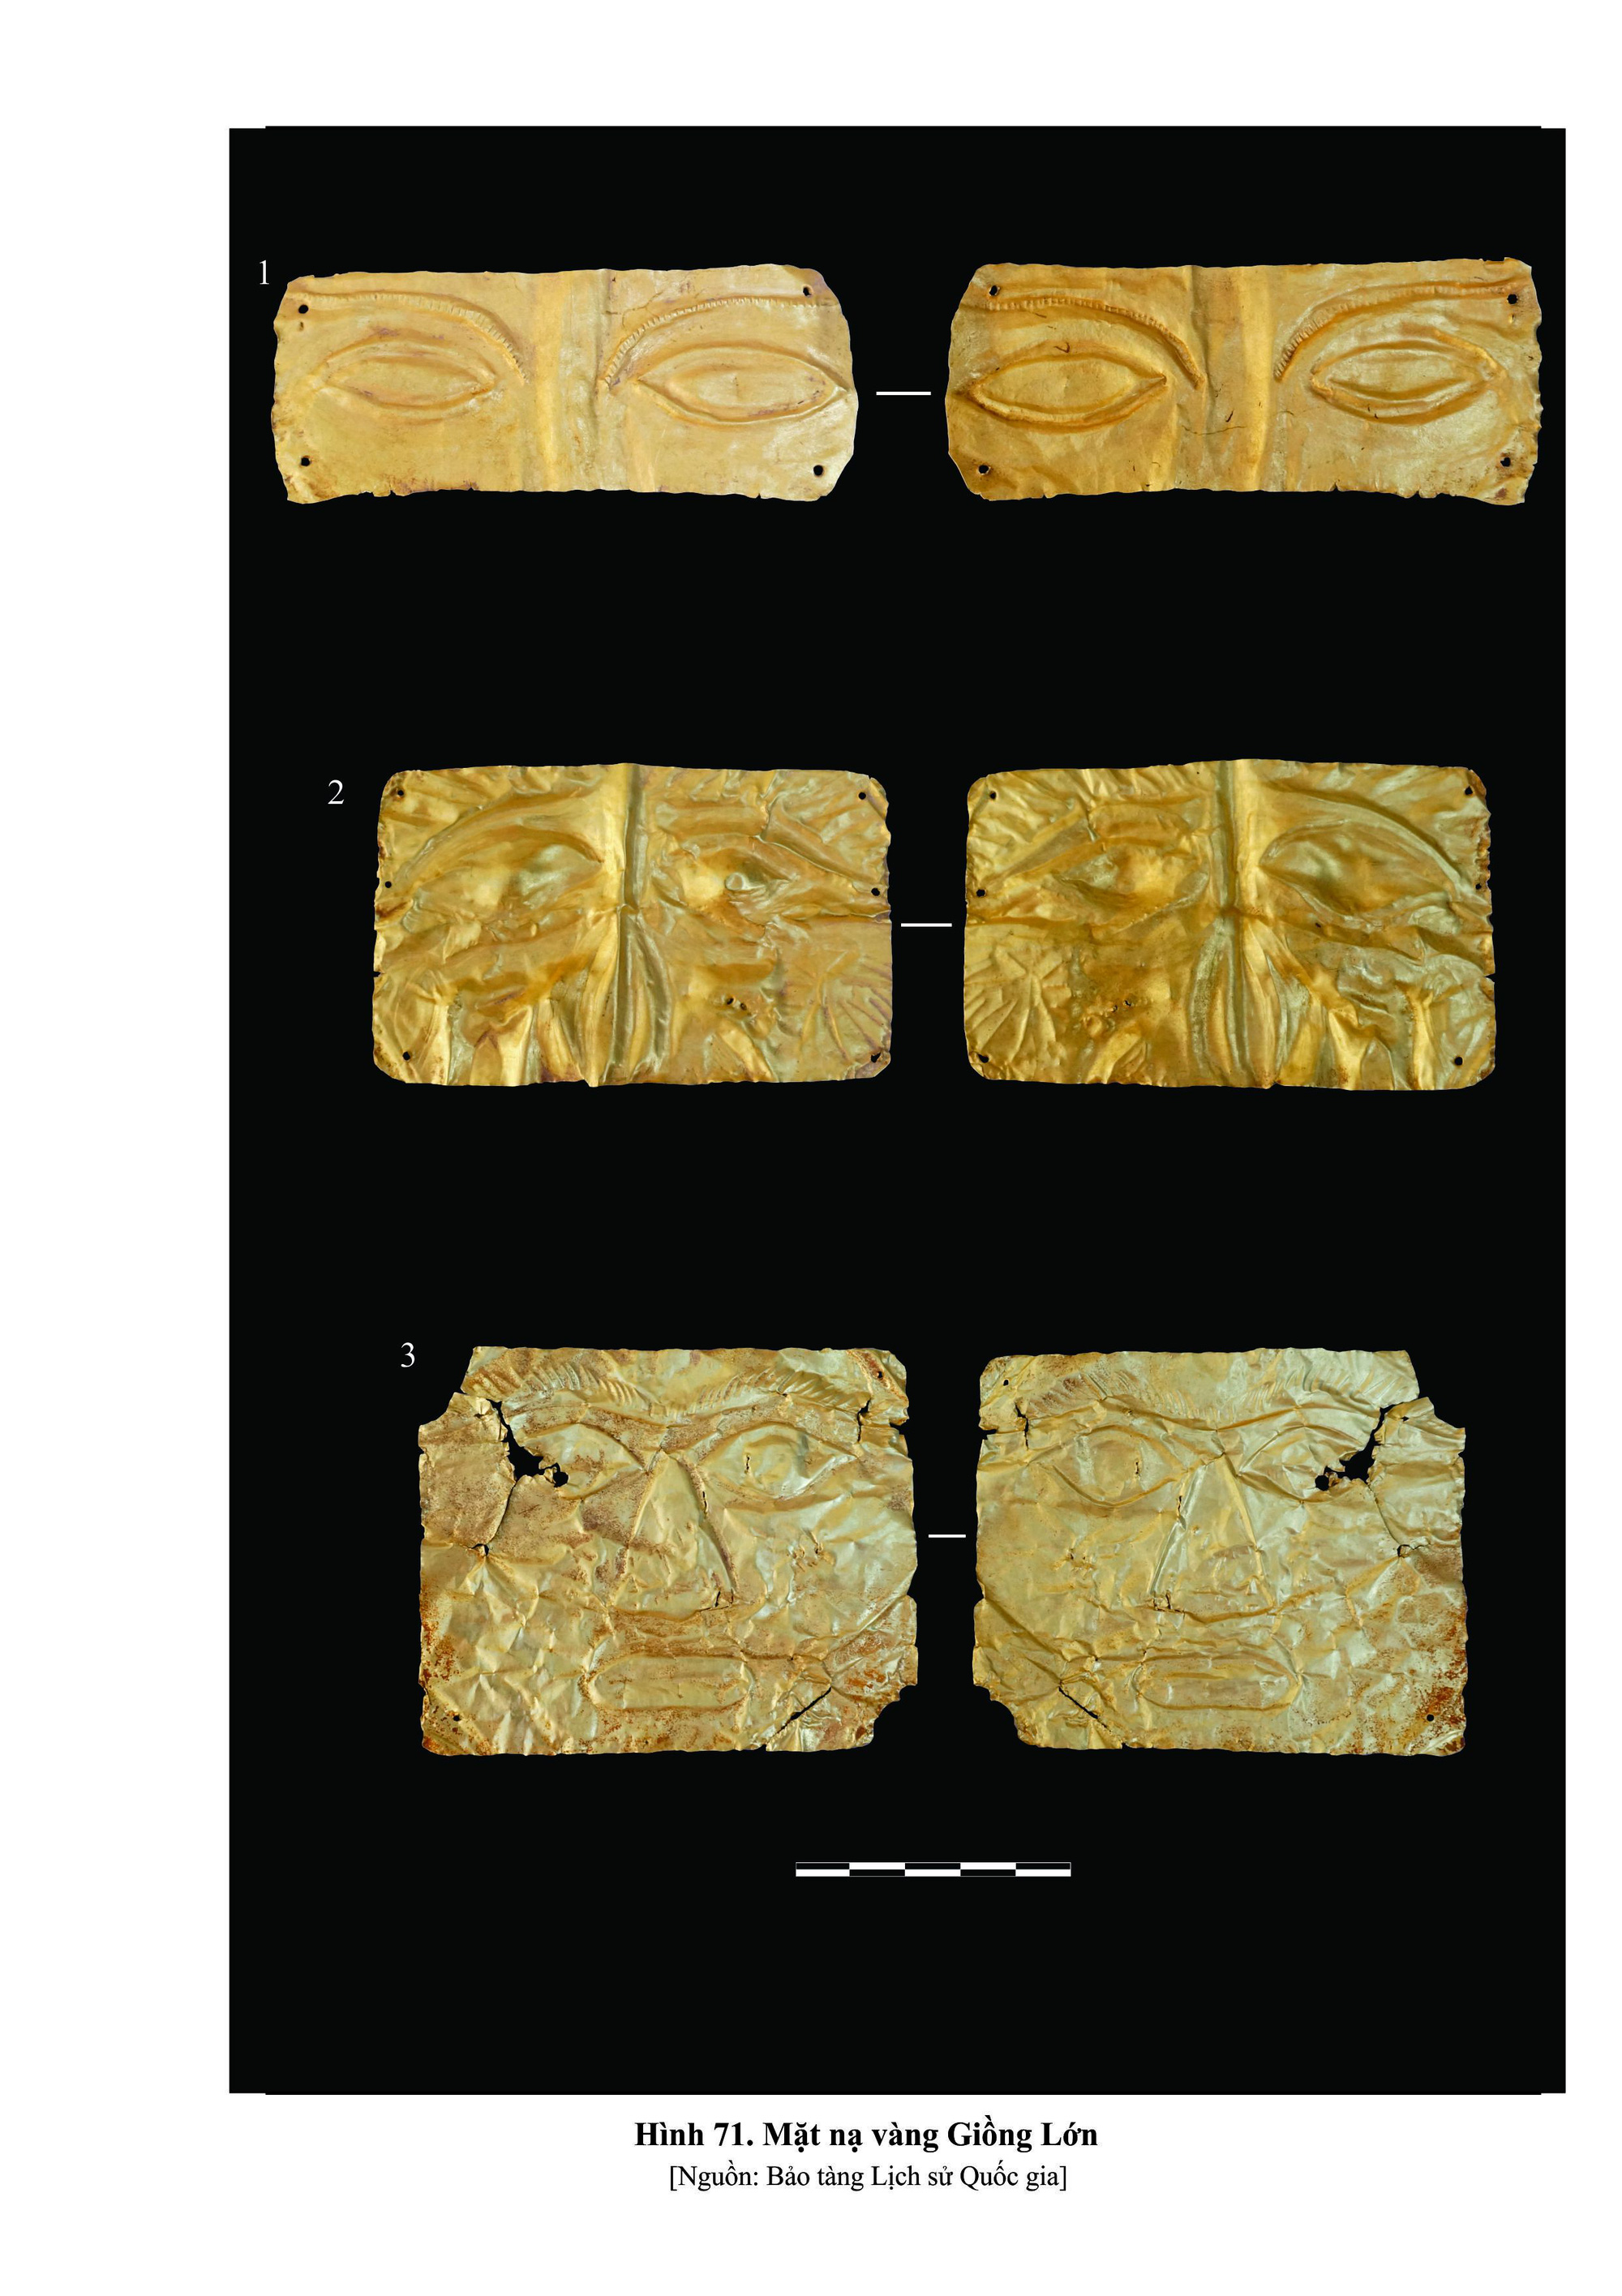 Hình ảnh ba mặt nạ vàng Giồng Lớn bảo vật quốc gia.